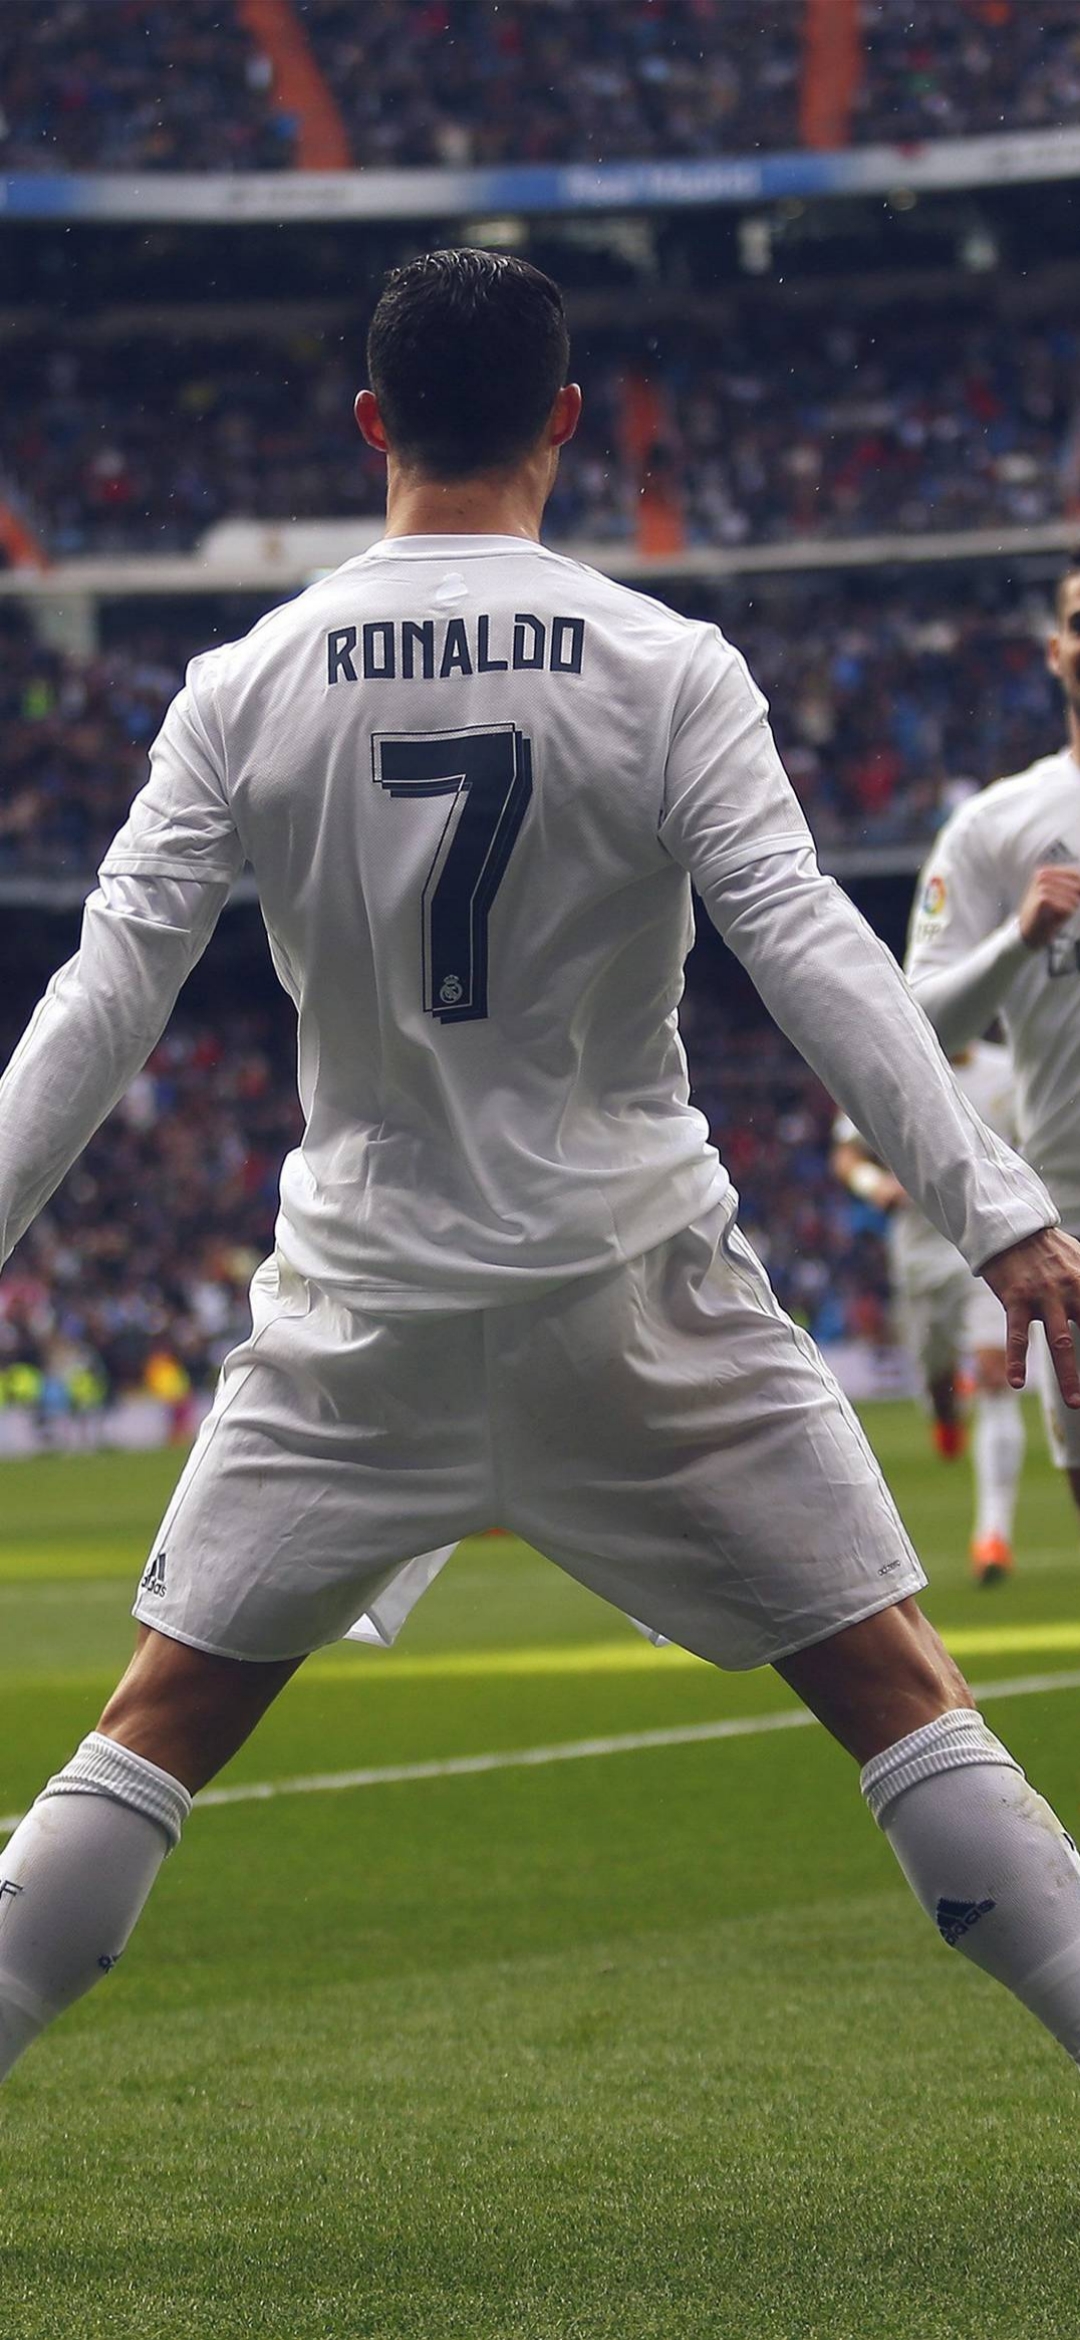 Cristiano Ronaldo Background Wallpaper